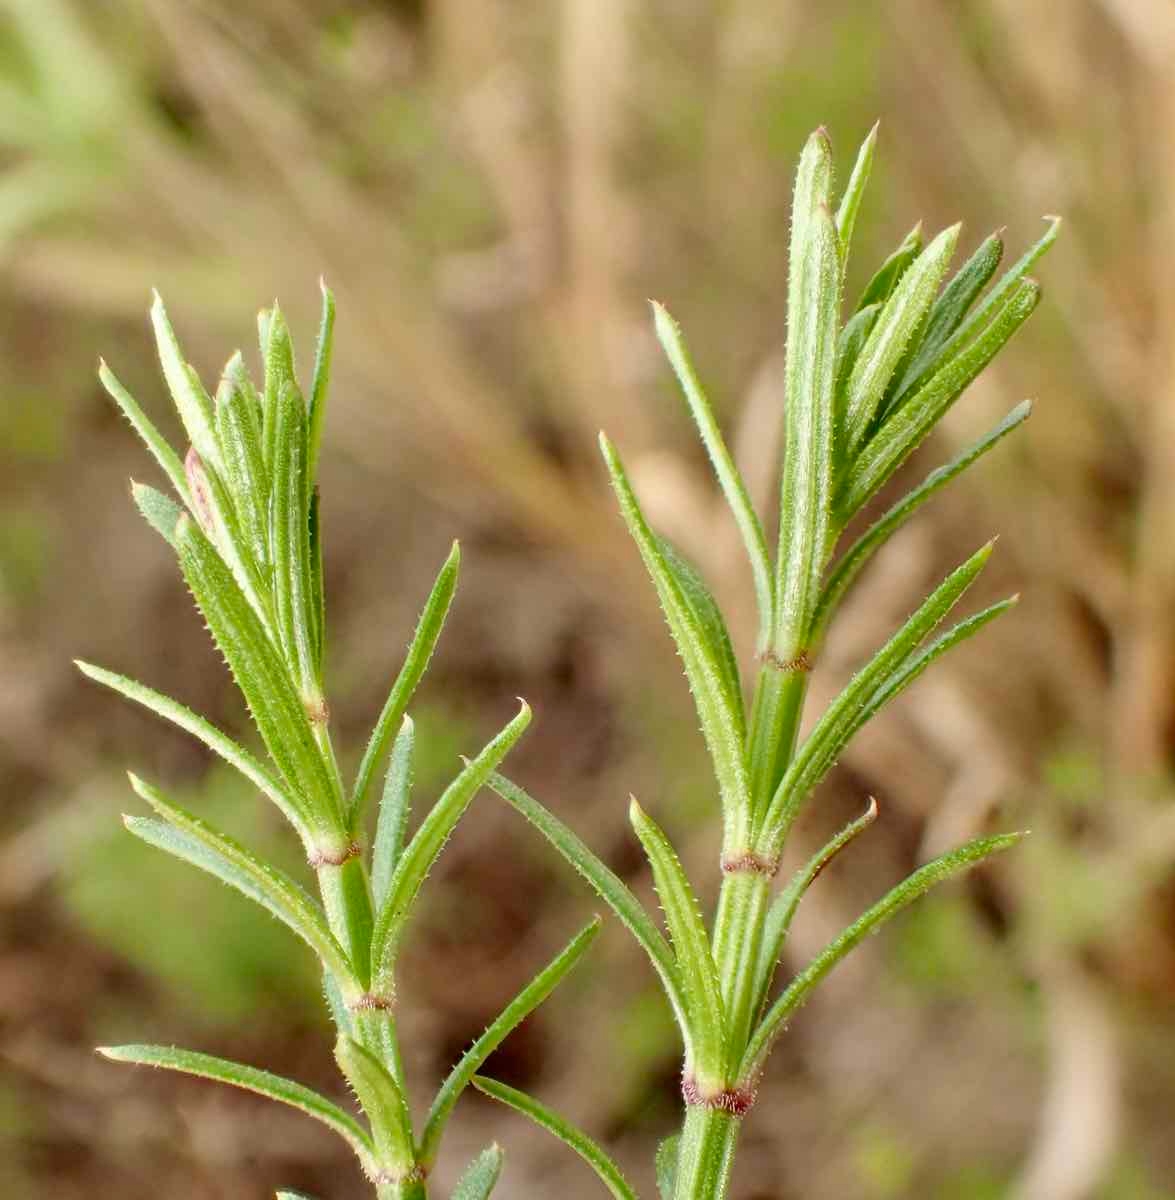 Galium angustifolium ssp. angustifolium